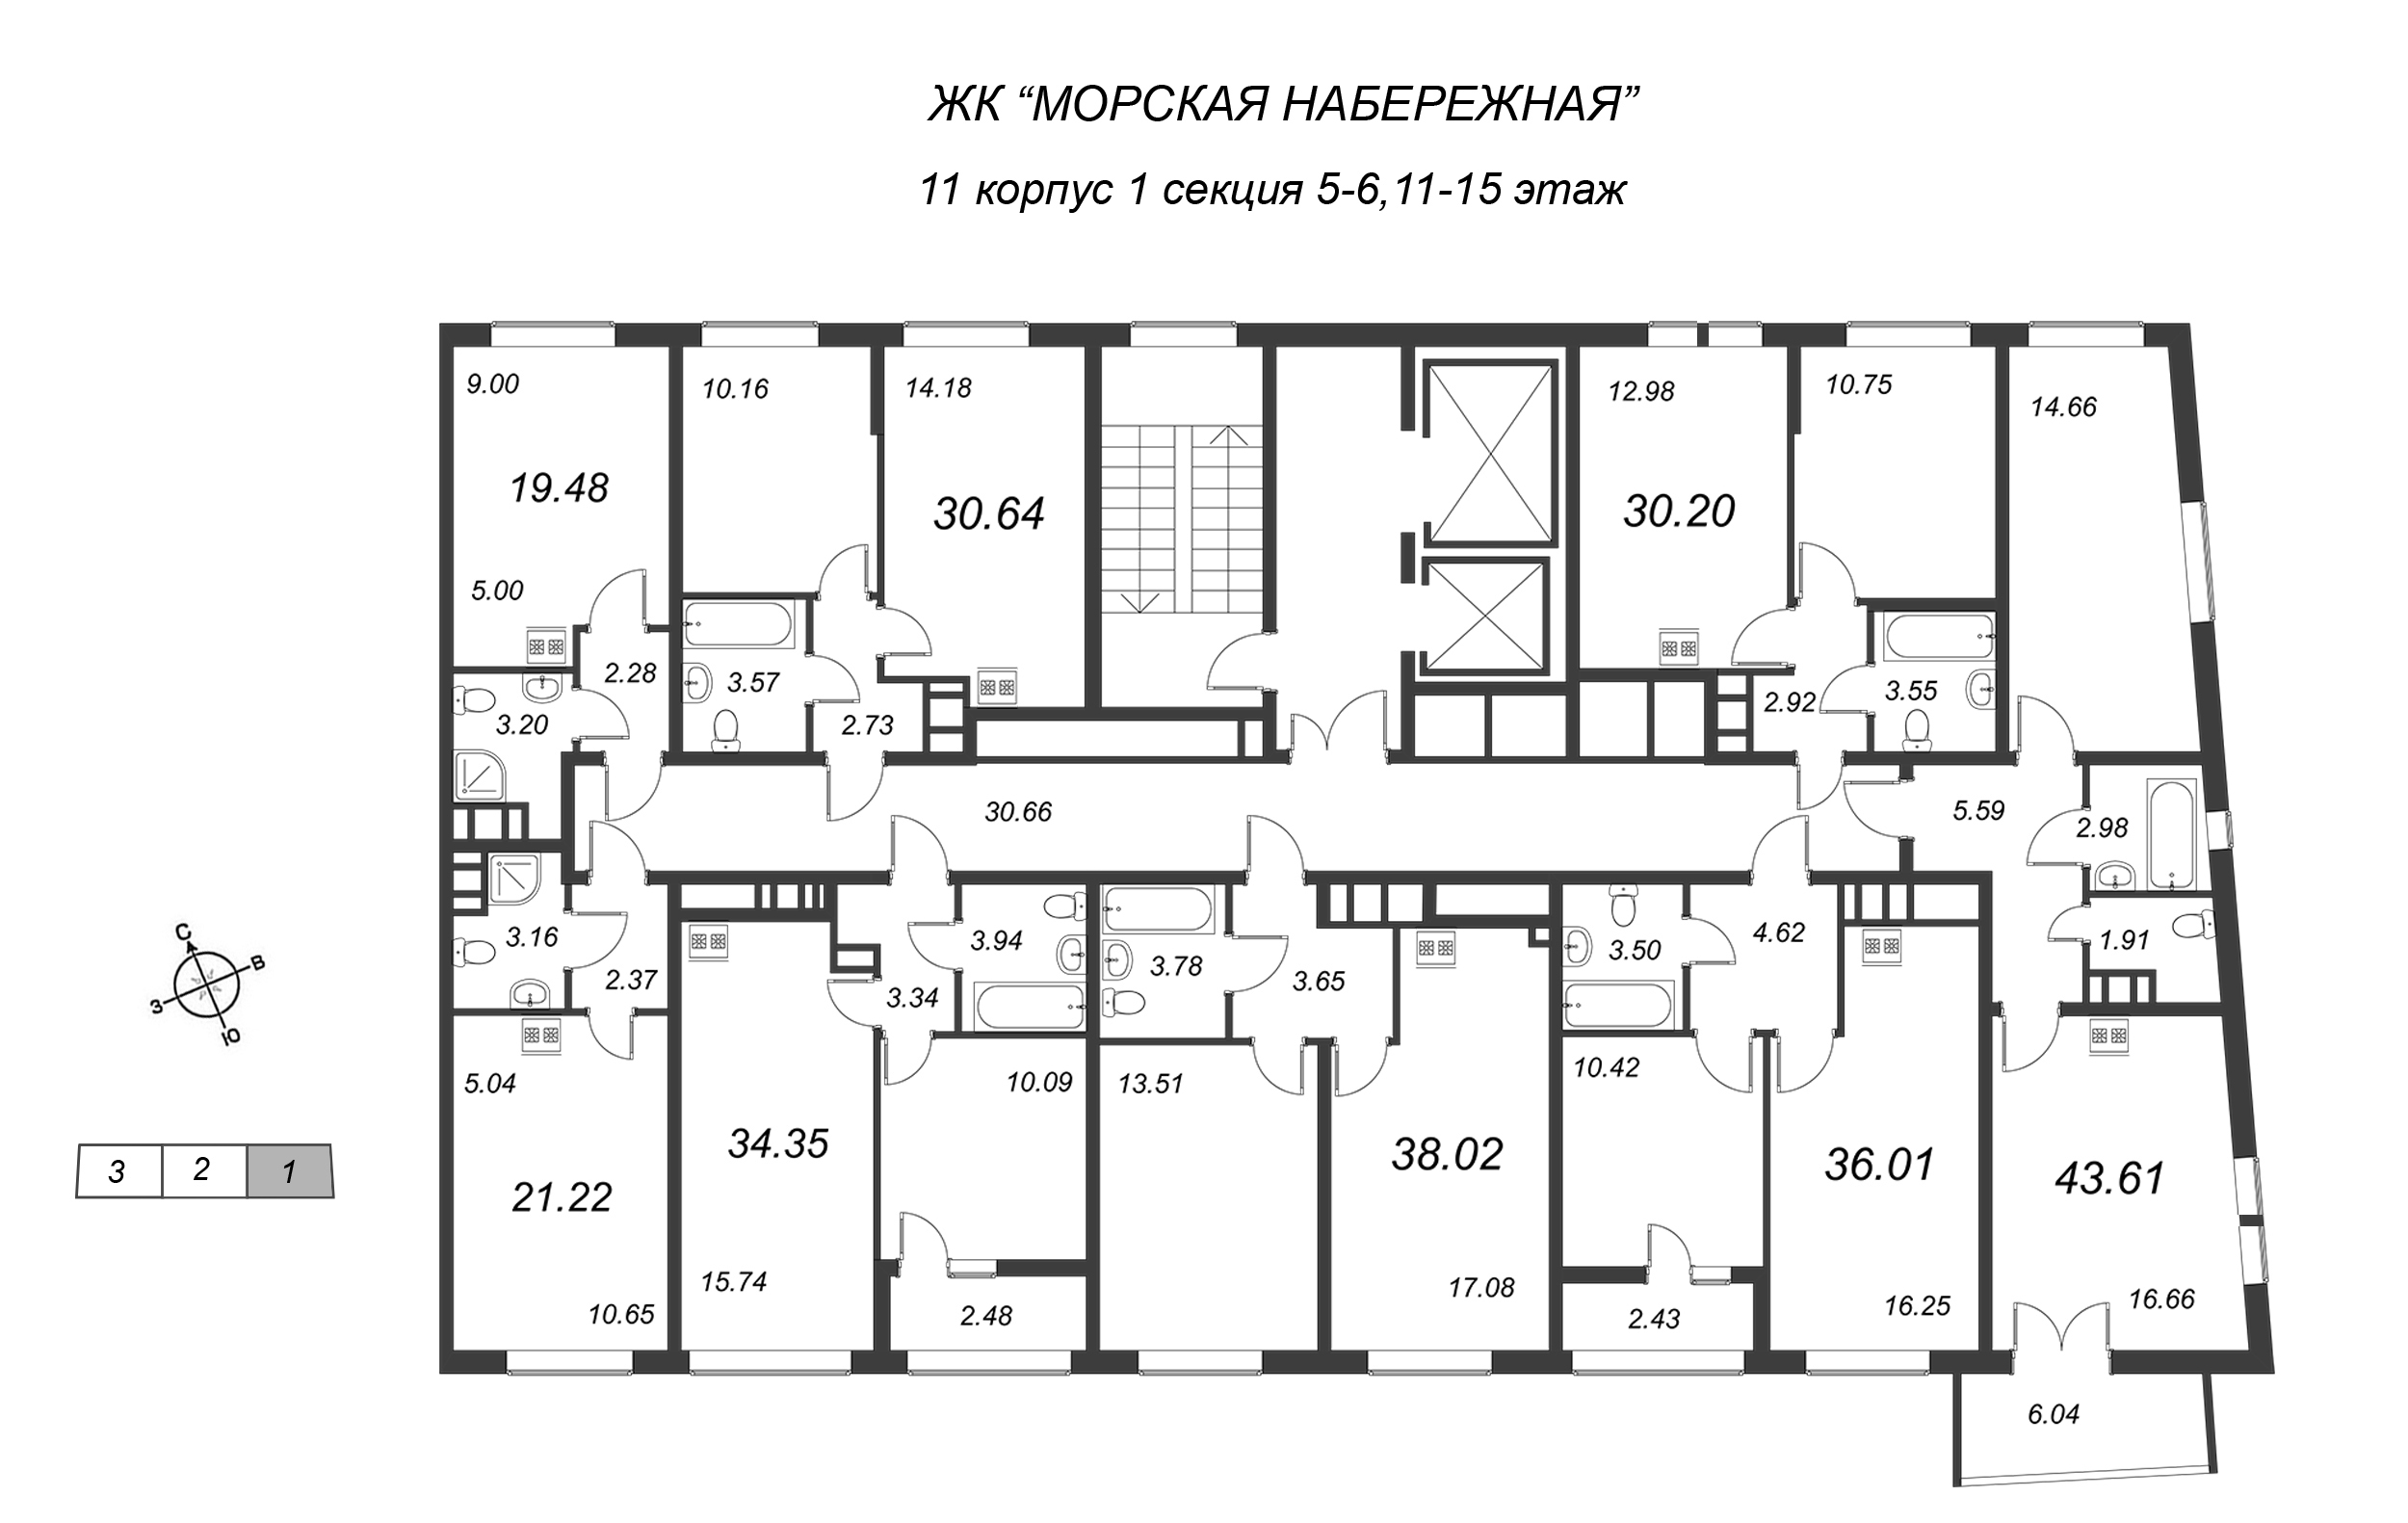 Квартира-студия, 21.22 м² в ЖК "Морская набережная" - планировка этажа